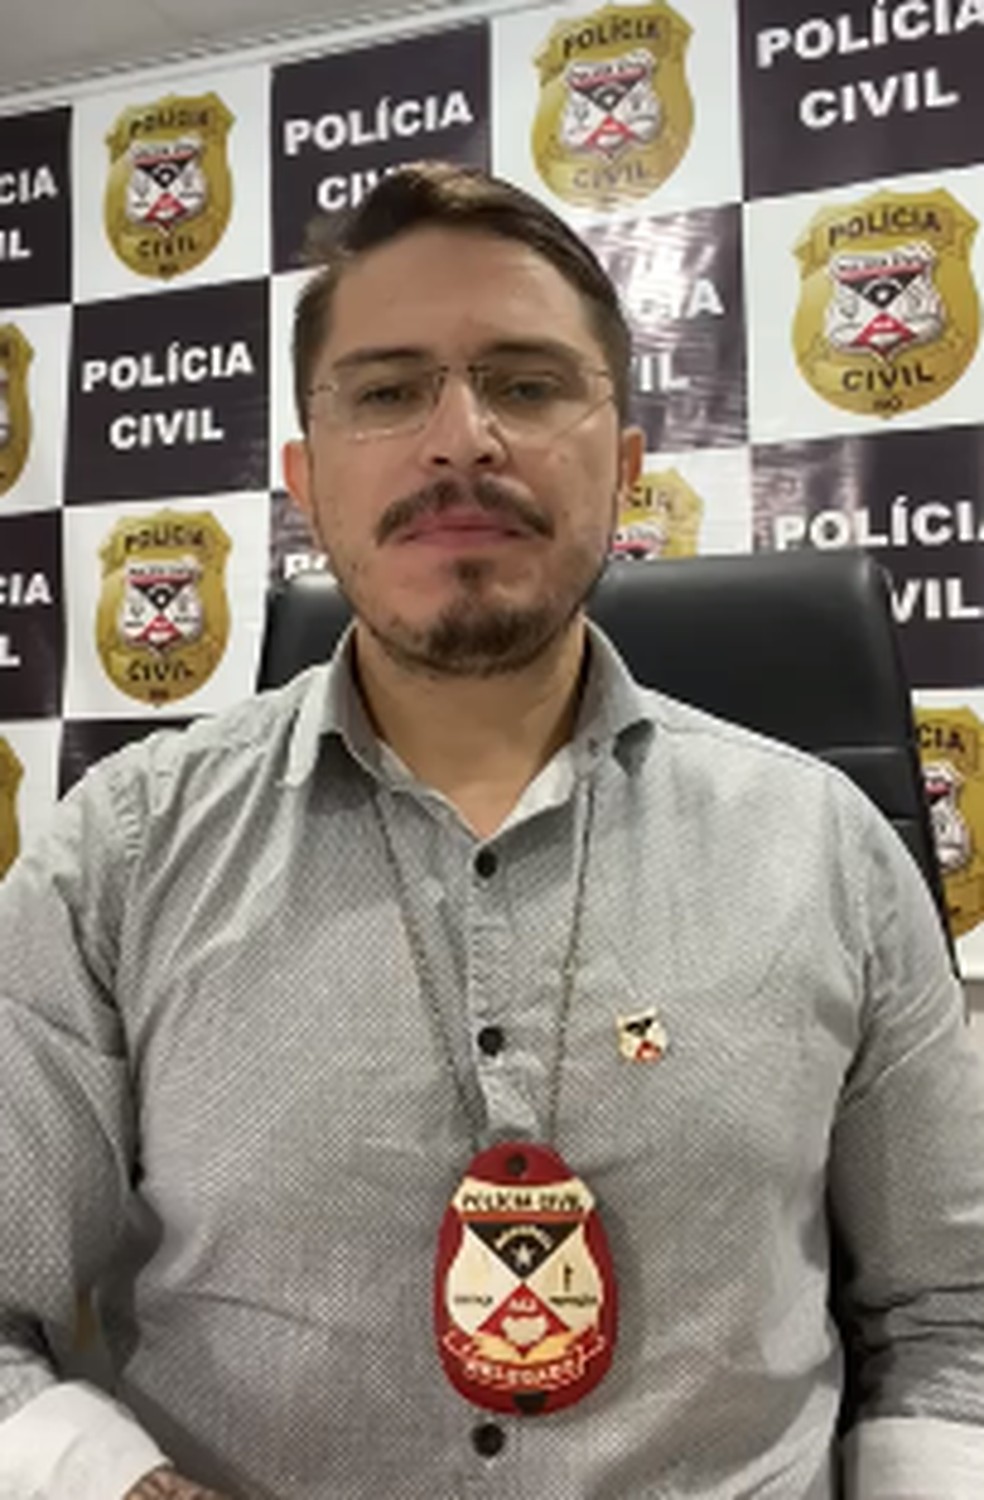 Marcos Correia, Delegado da Polícia Civil. em Porto Velho, Rondônia — Foto: arquivo pessoal